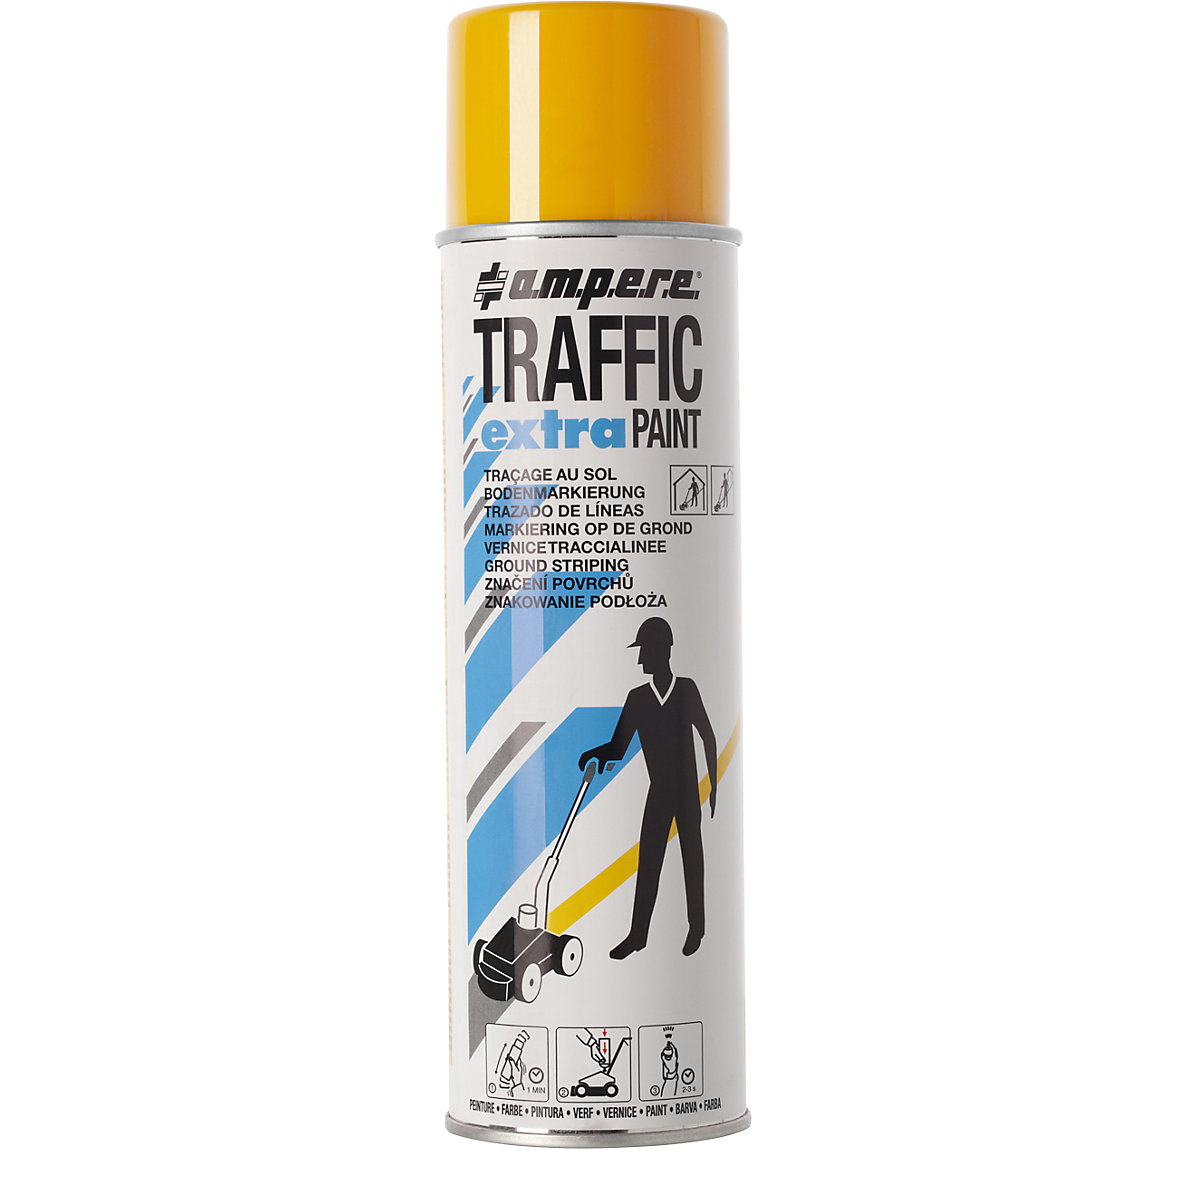 Traffic extra Paint® jelölőfesték nagy igénybevételhez – Ampere